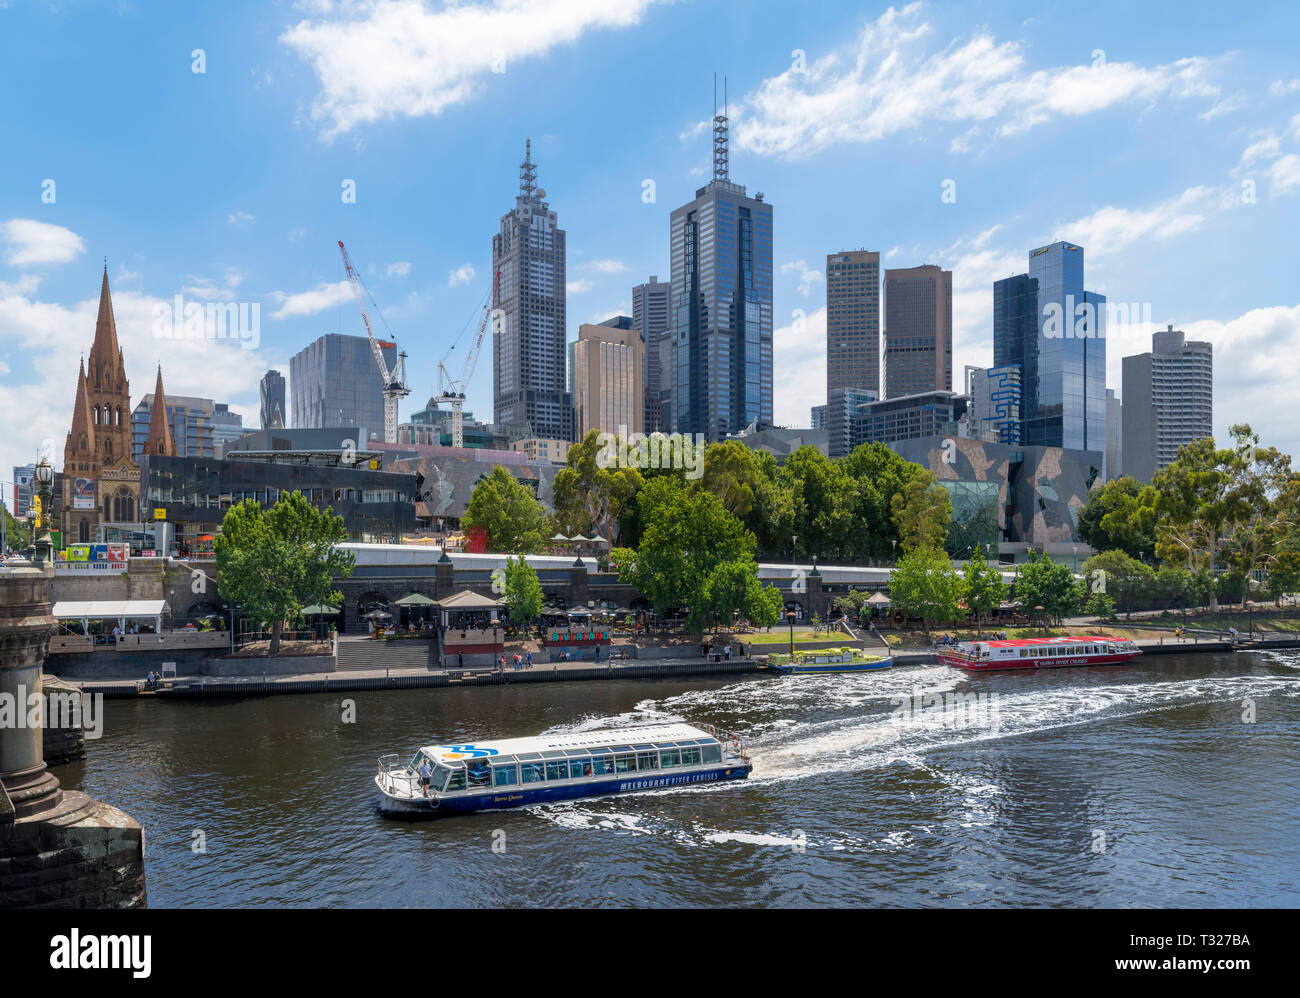 Bateau de croisière sur la rivière de Melbourne la Yarra River devant le Central Business District (CBD), de Princes Bridge, Melbourne, Victoria, Australie Banque D'Images